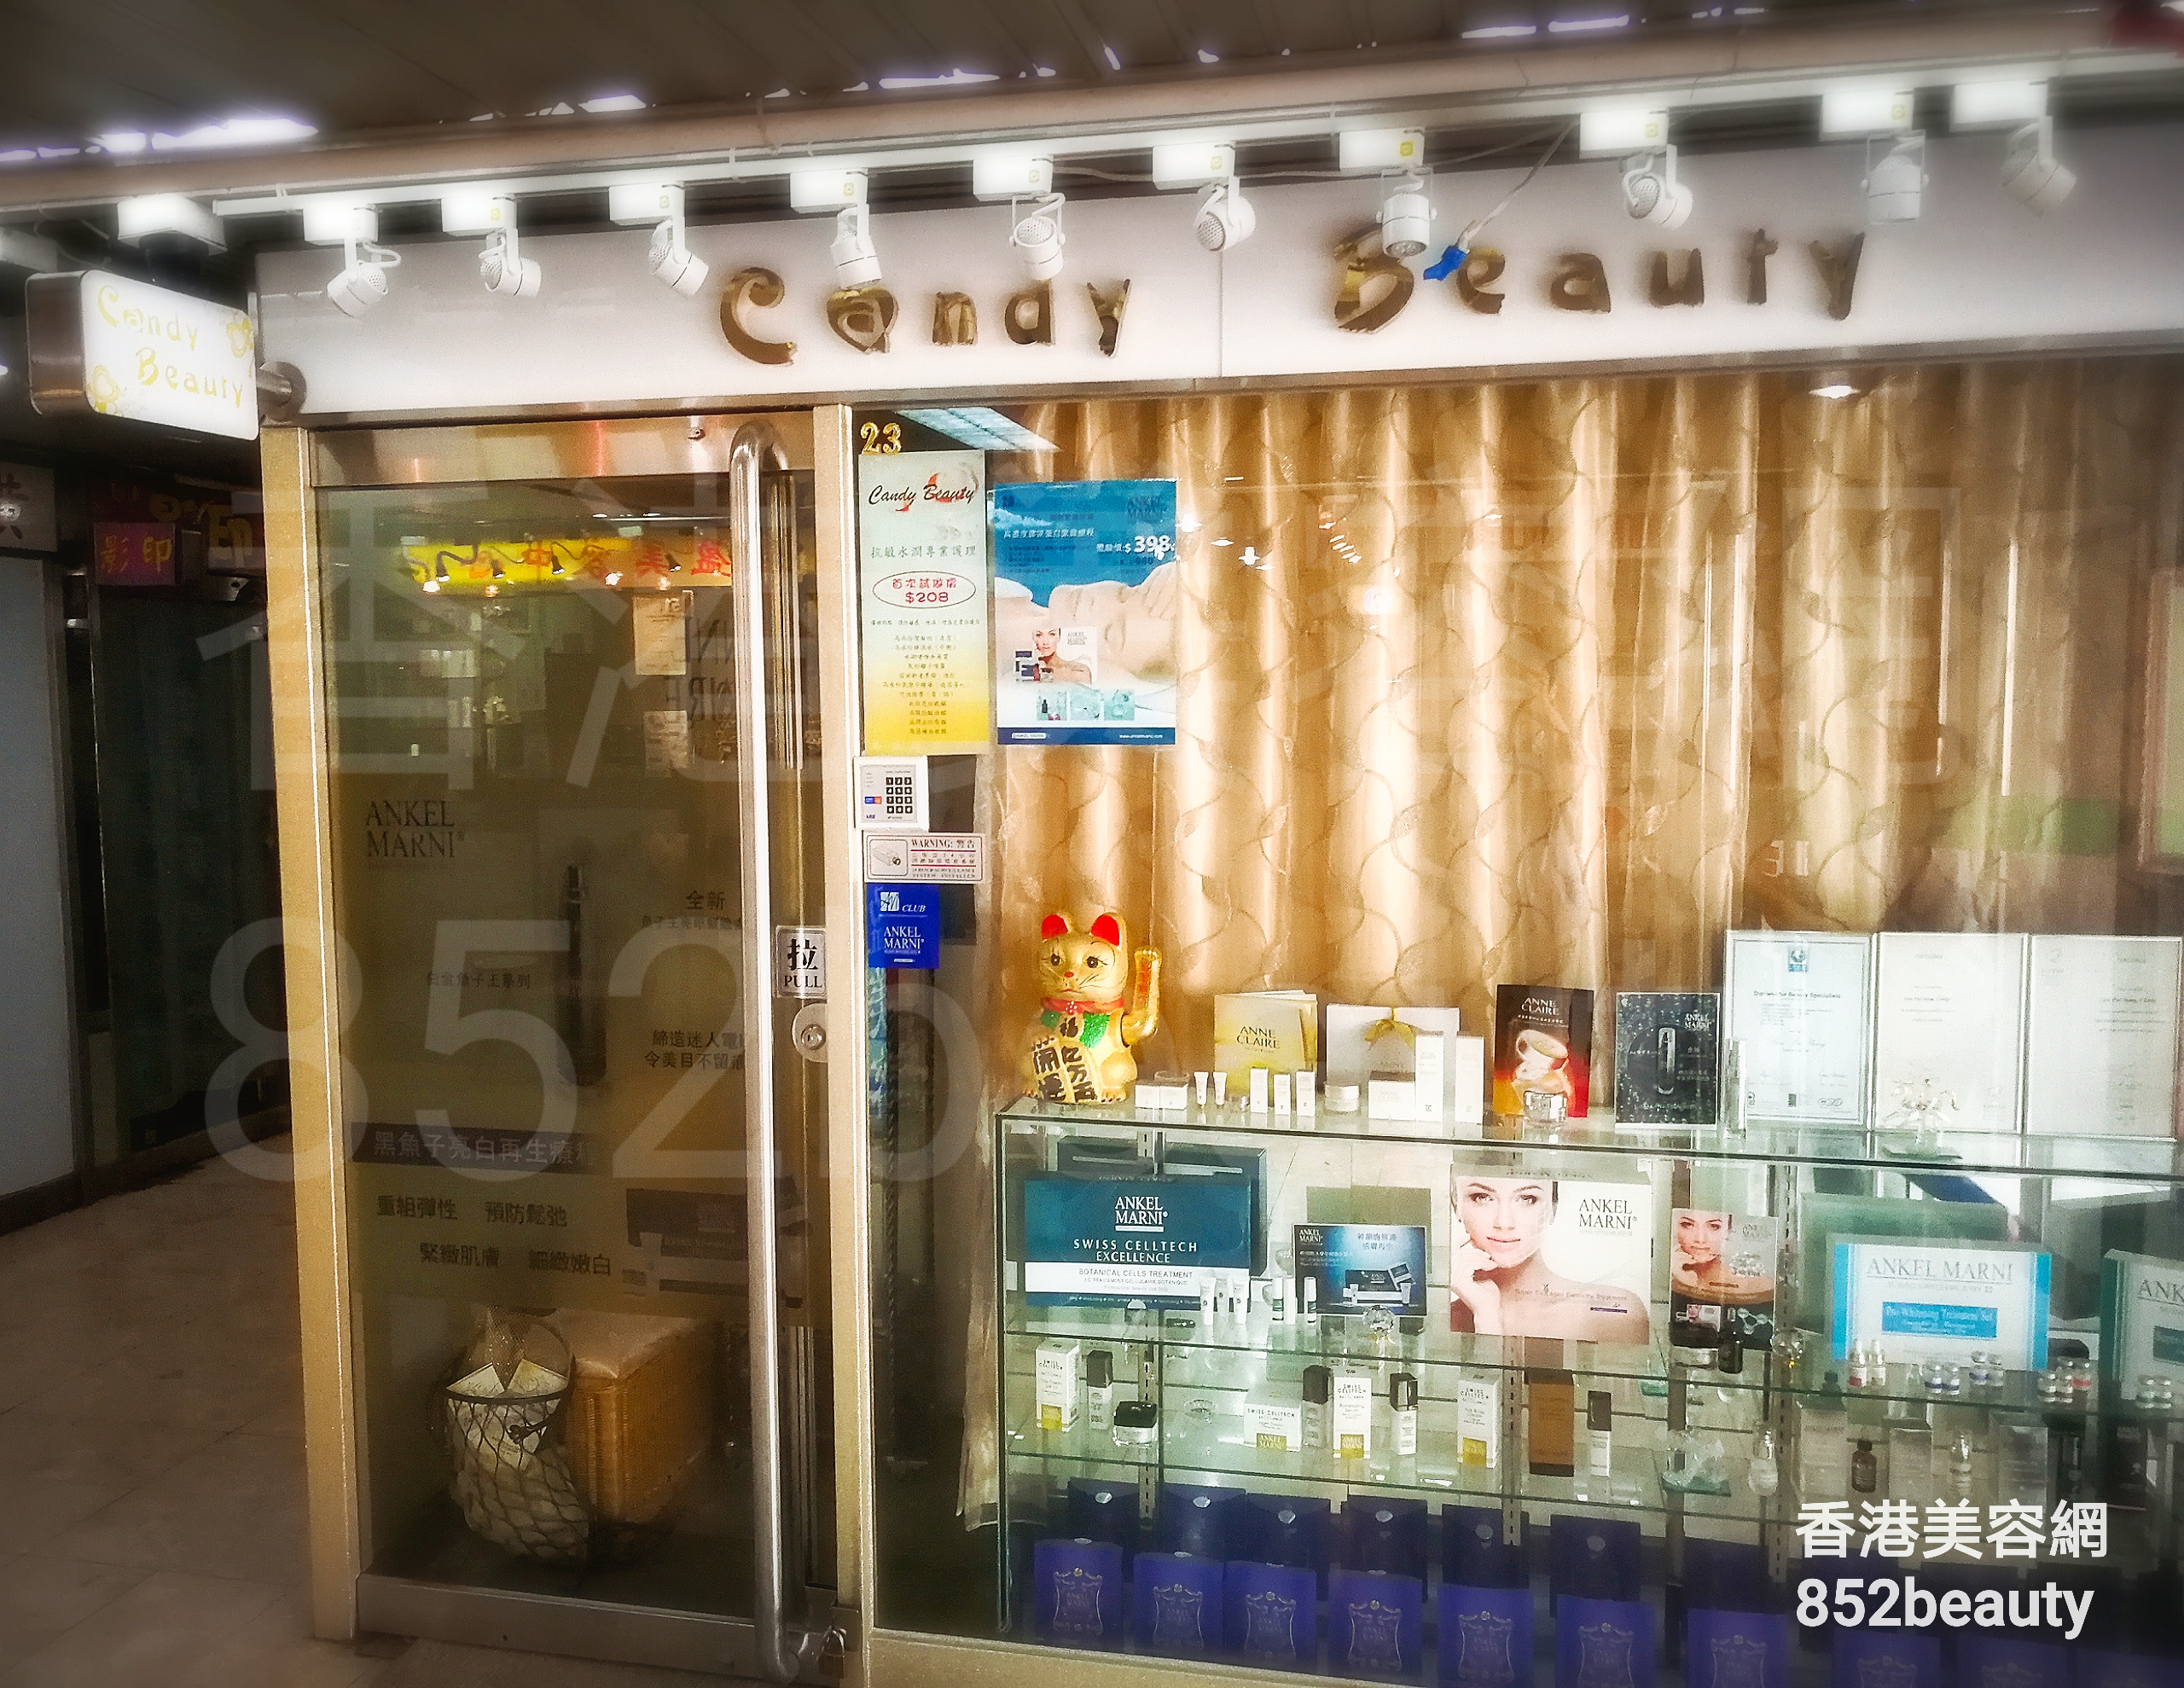 美容院: Candy Beauty